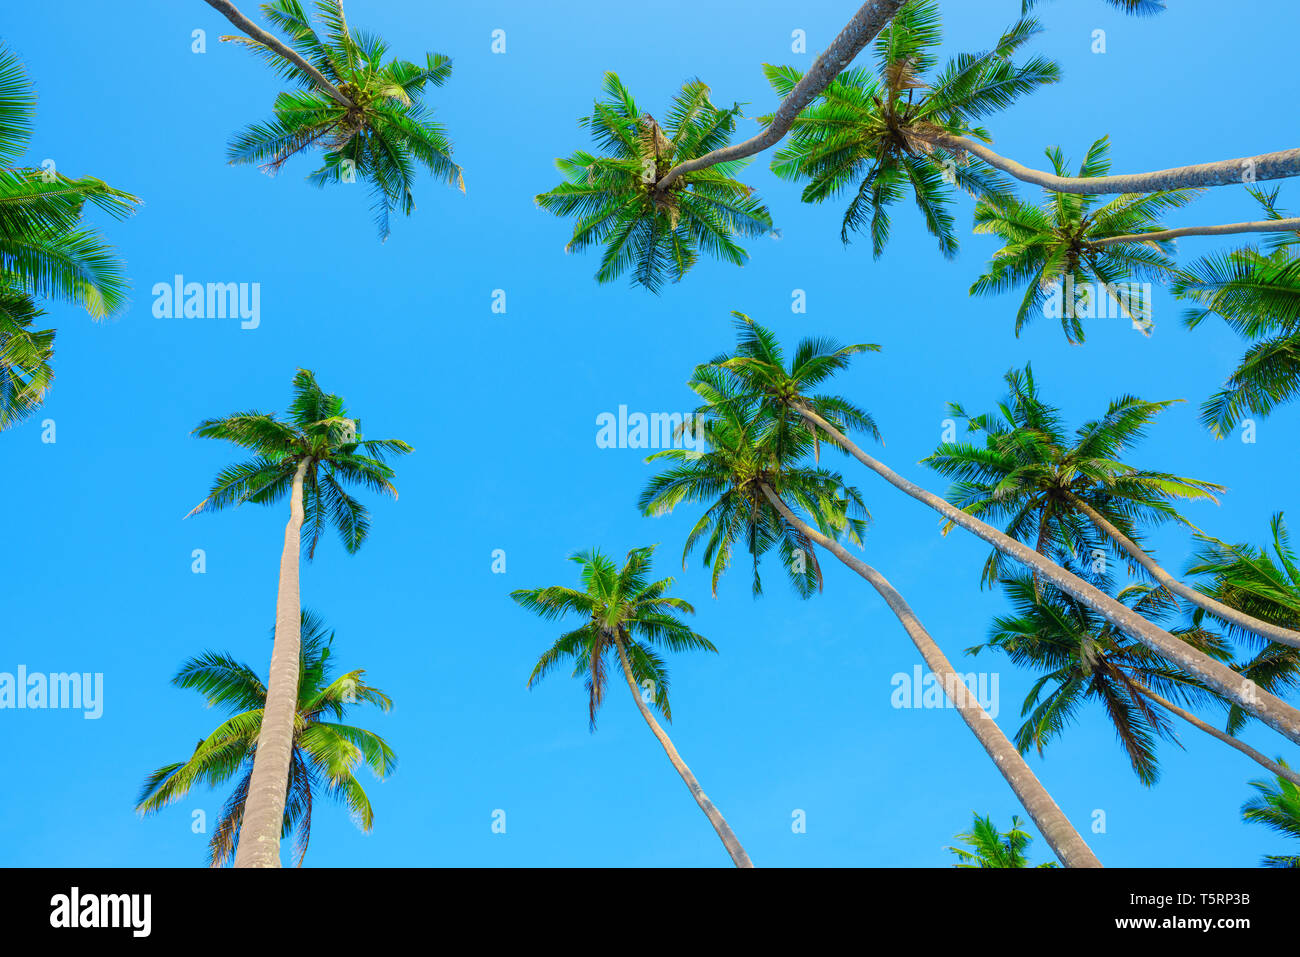 Palmen über blauen Himmel, perspektivische Ansicht vom Boden bis zum grünen Palmen mit Kokosnüssen Kronen Stockfoto